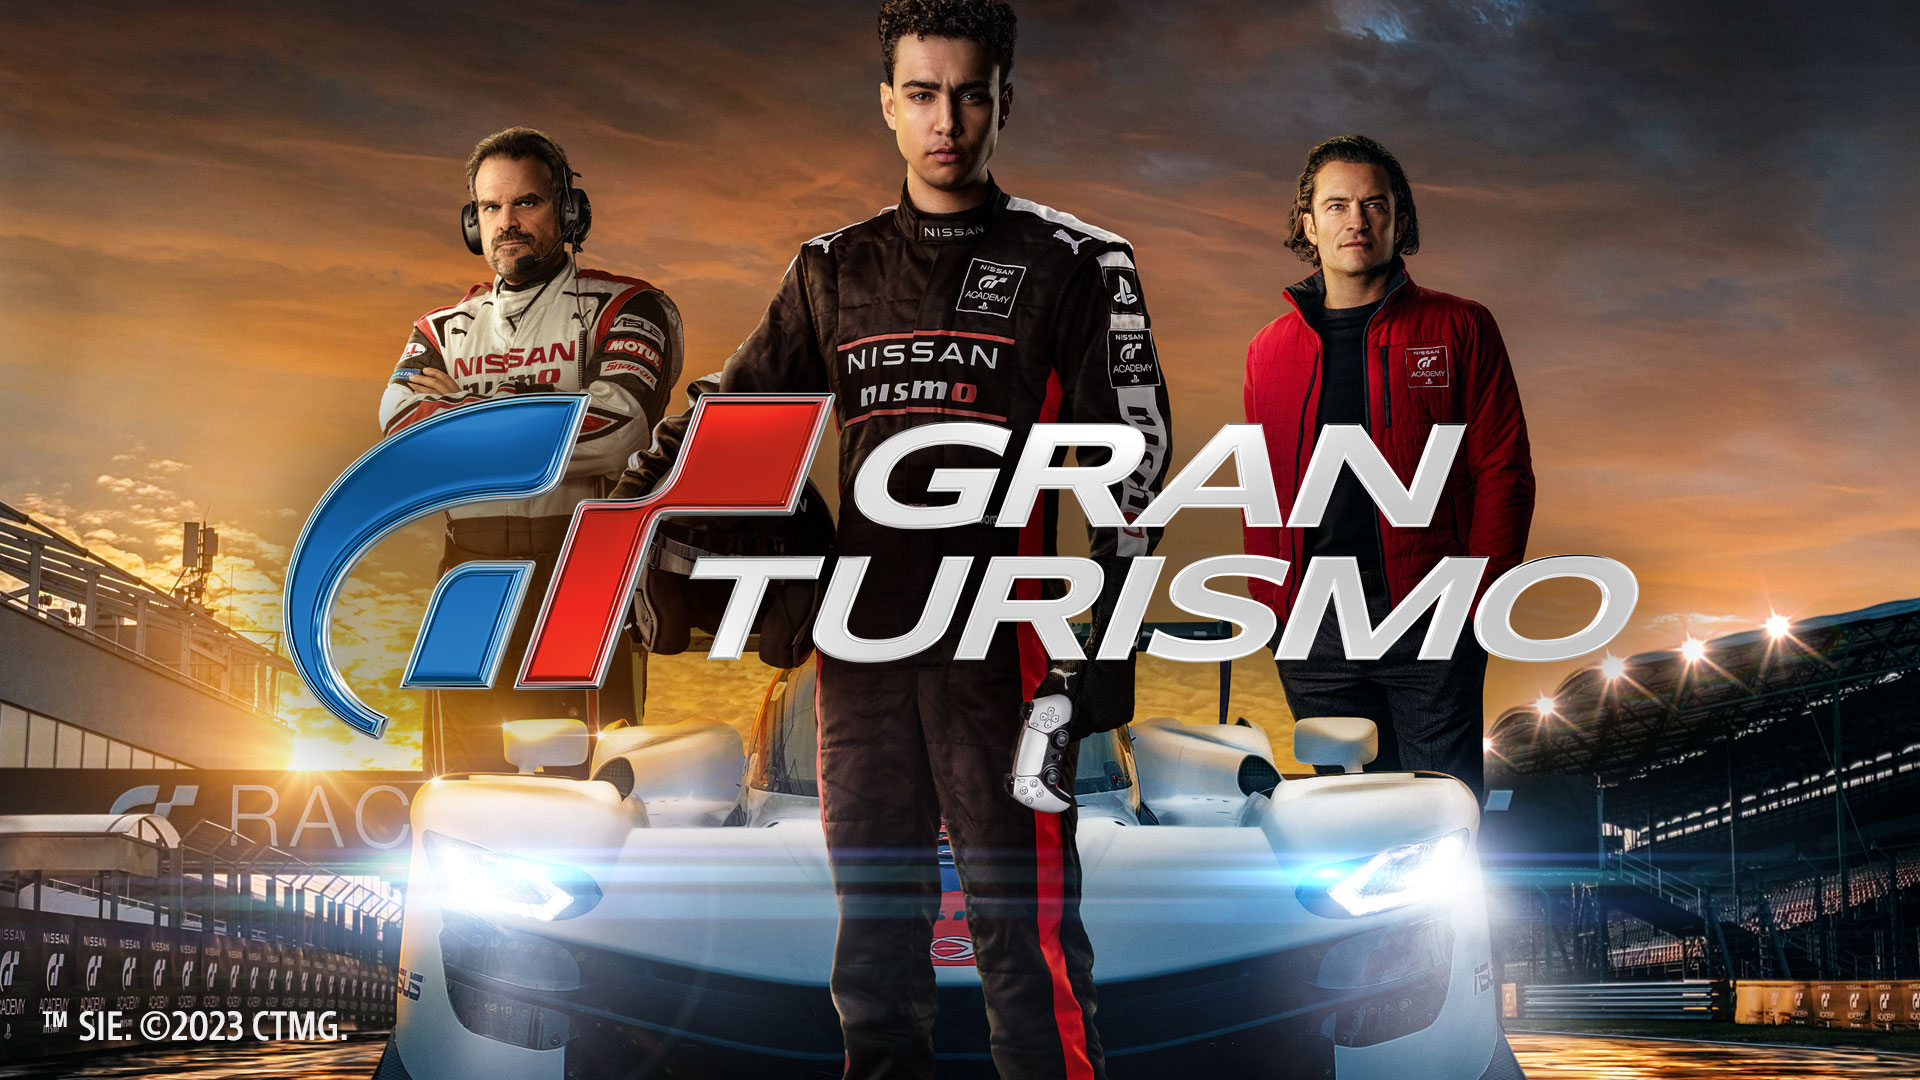 Celebramos el lanzamiento de la película de Gran Turismo con un auto GT-R especial de regalo y un evento de prueba contrarreloj! - gran-turismo.com